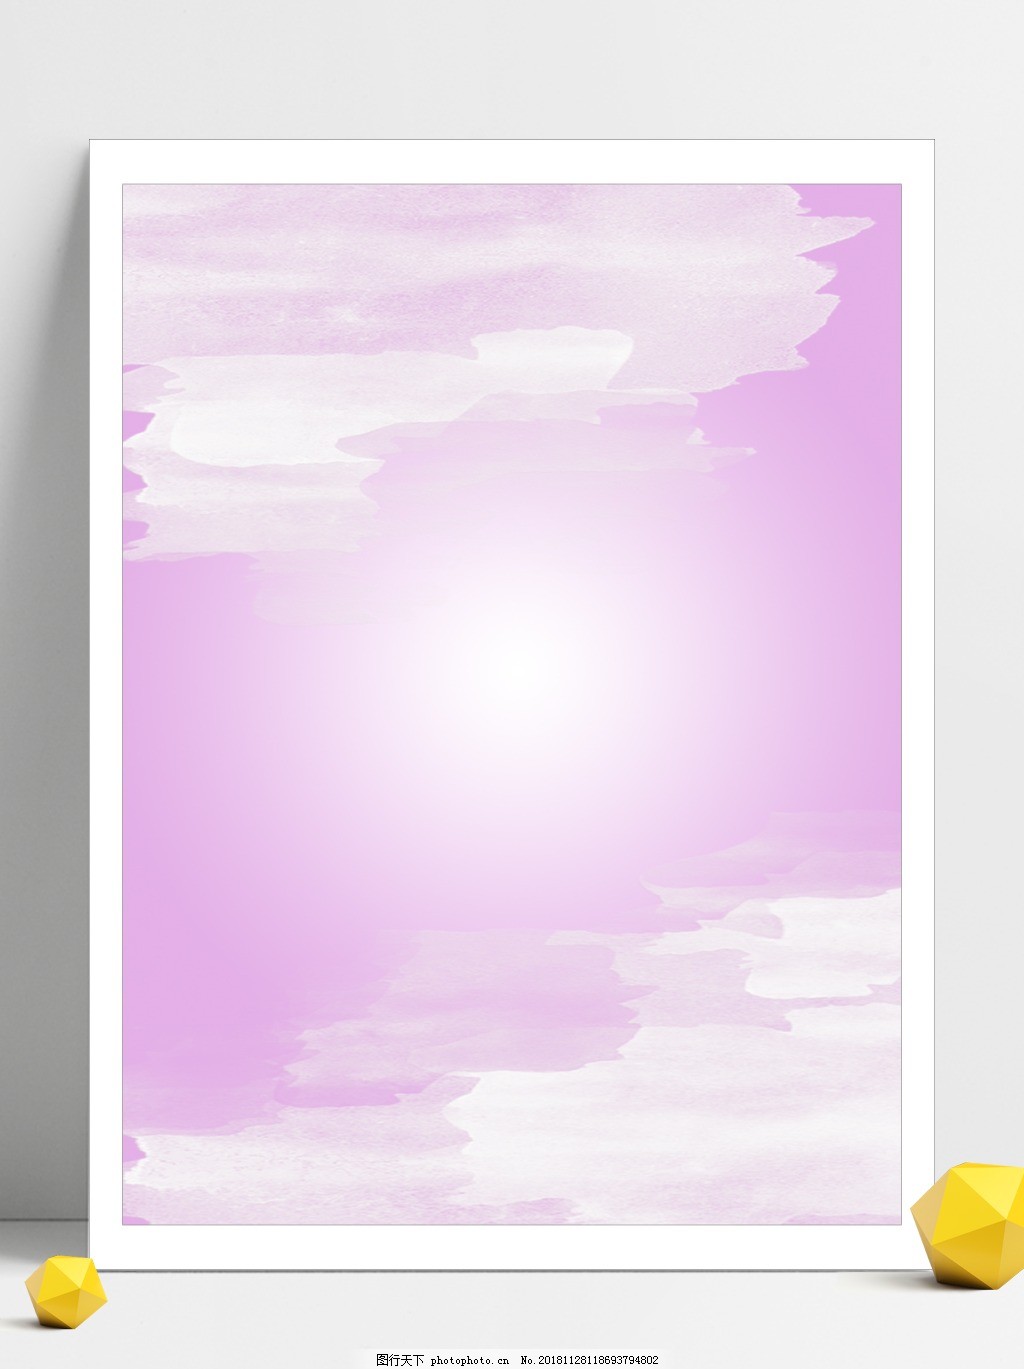 原创浪漫淡粉色系泼墨水彩边框背景素材图片 H5背景 底纹边框 图行天下素材网